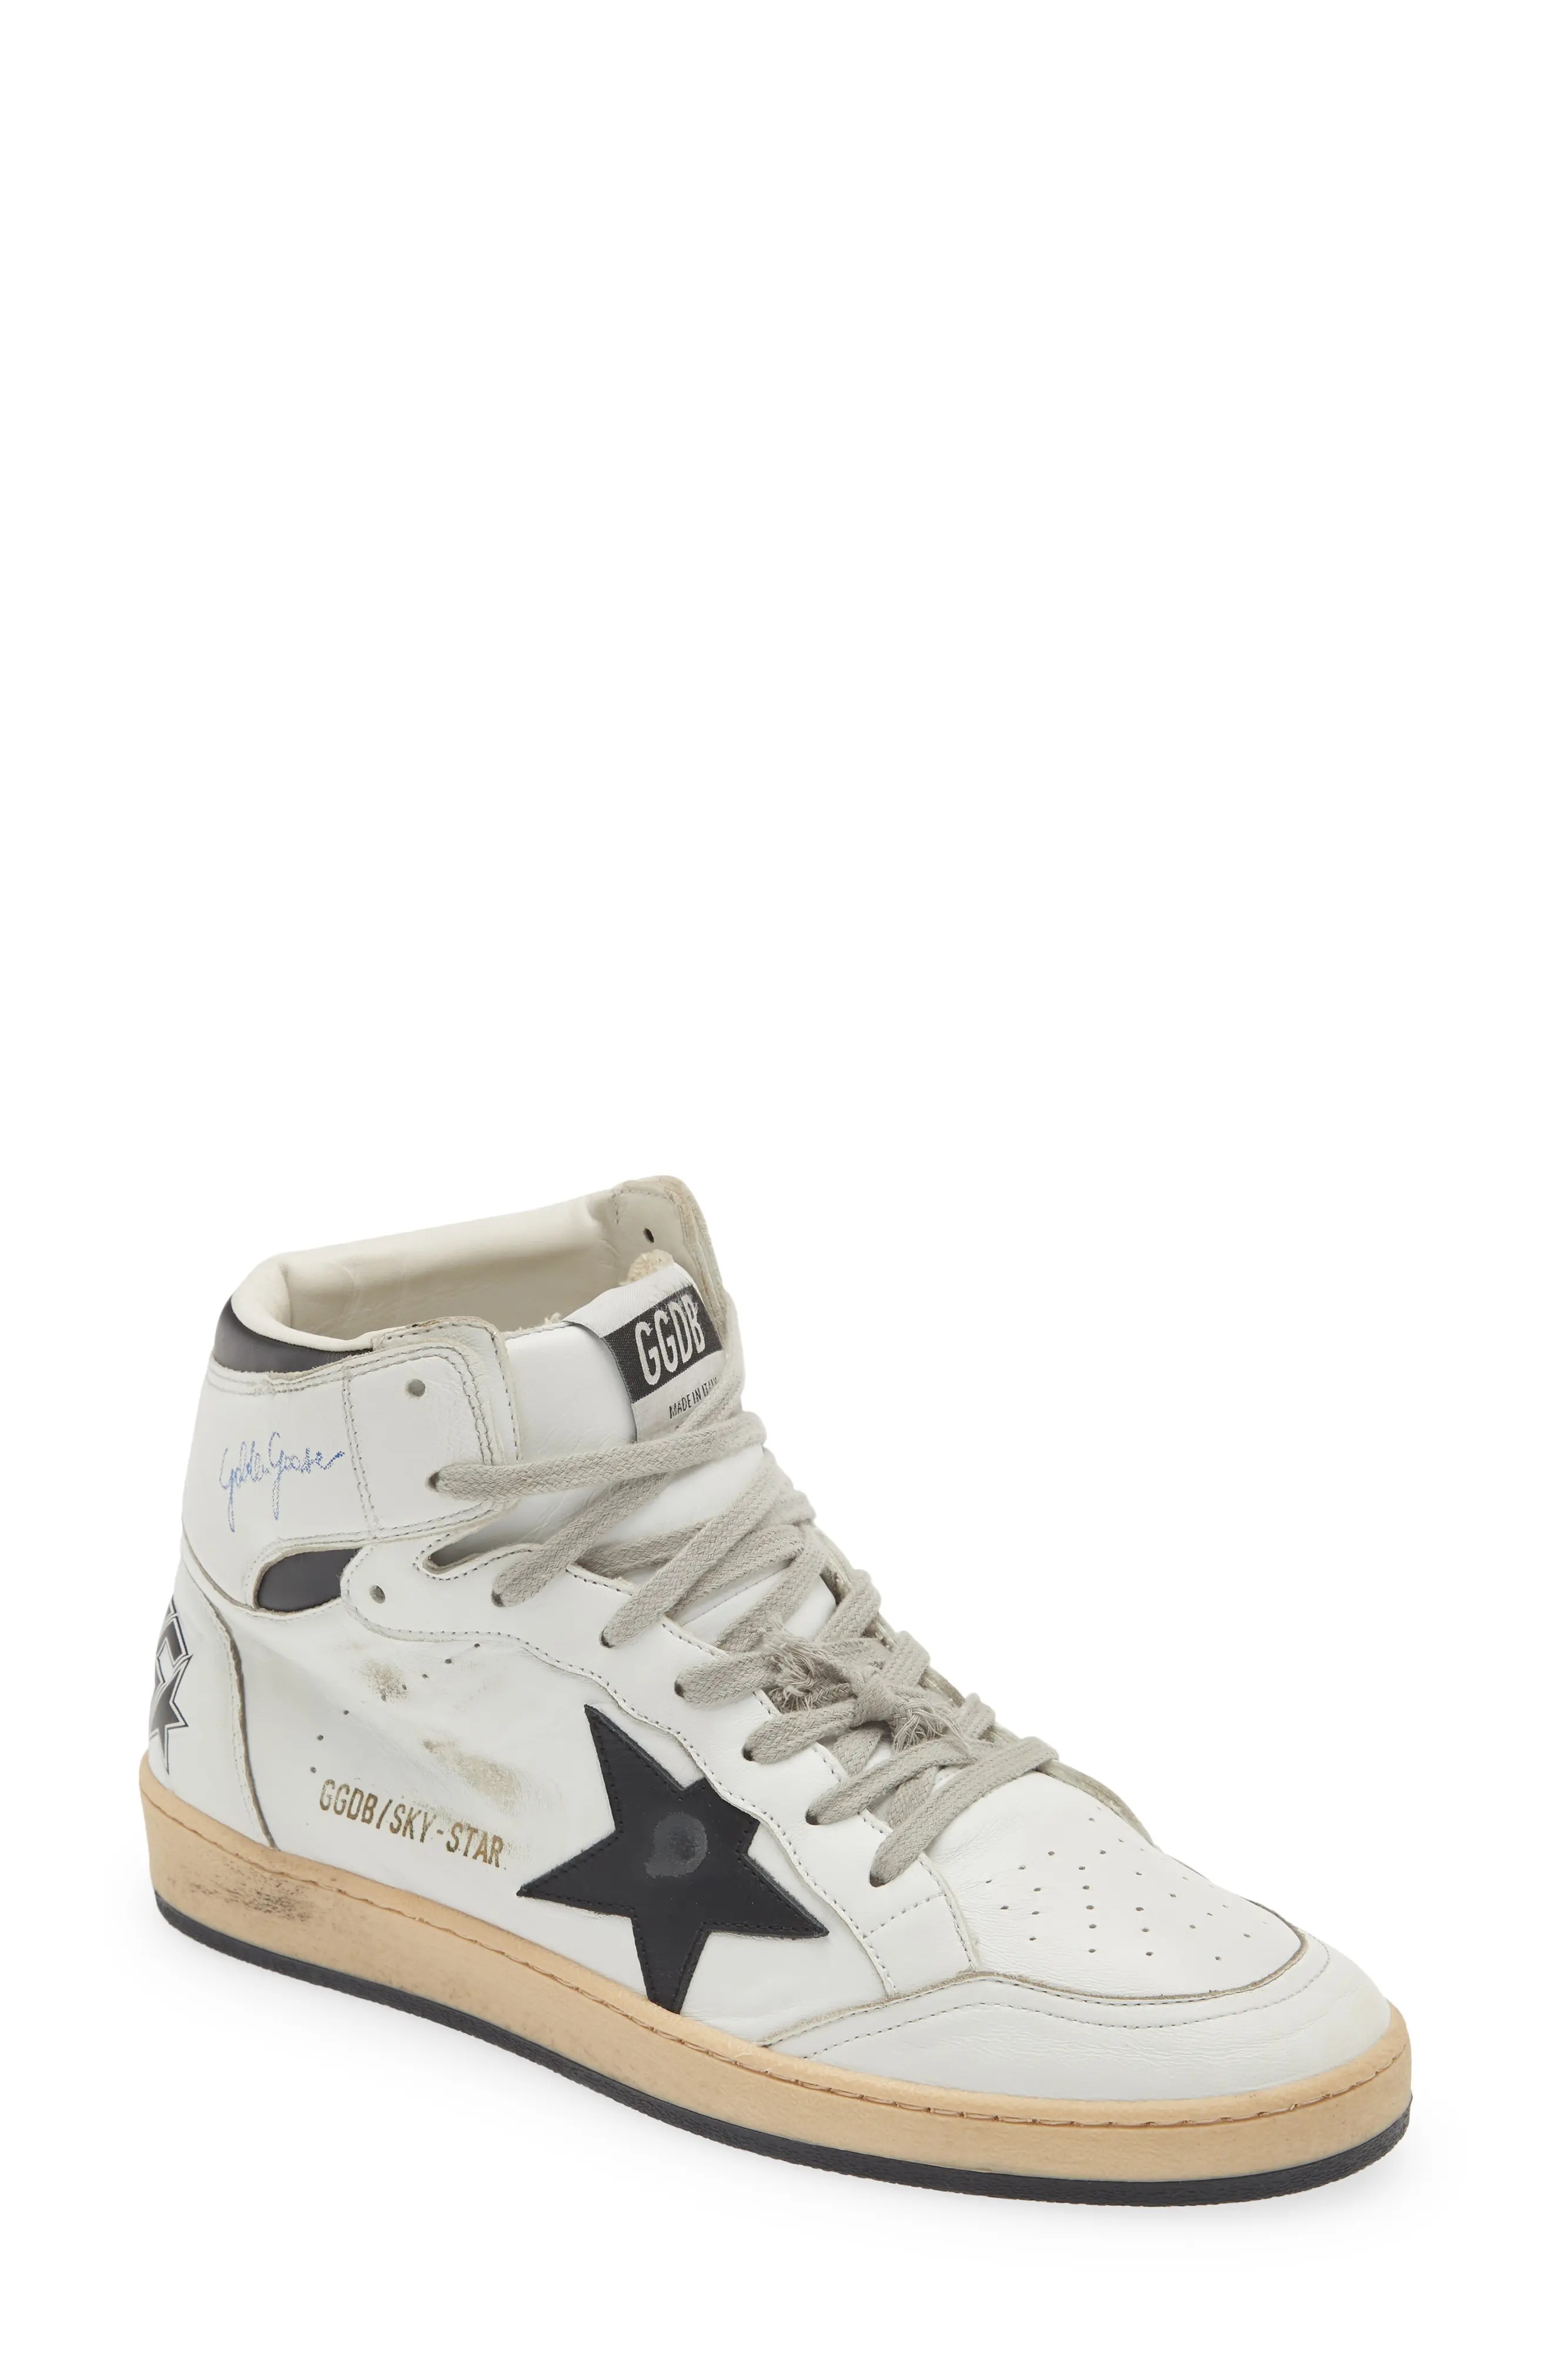 Sky-Star High Top Sneaker in White/Black 10283 - 1